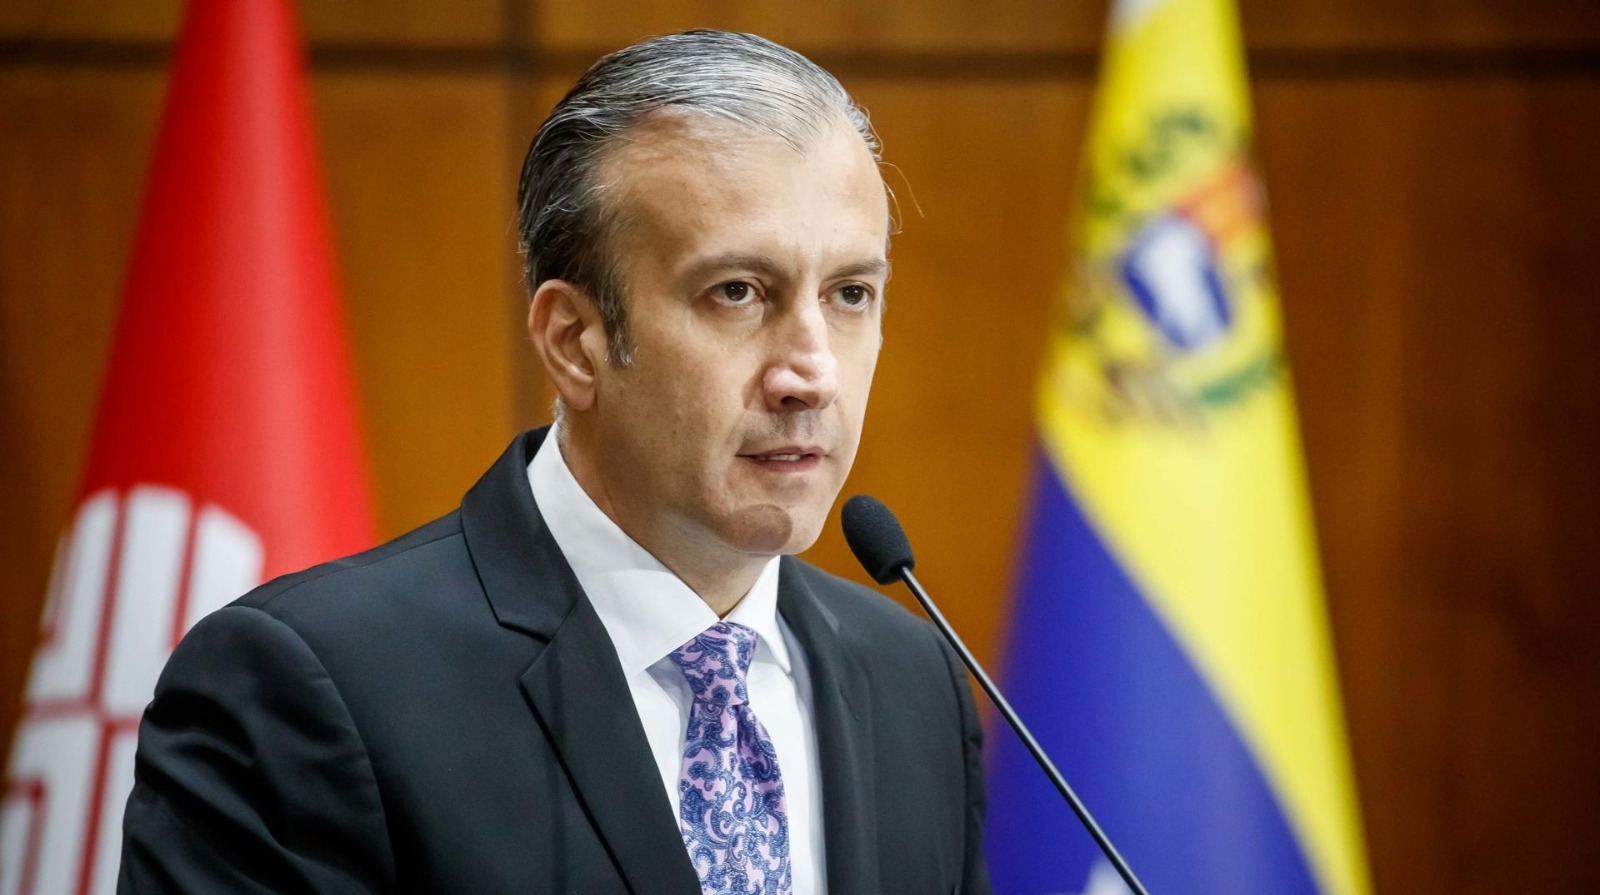 Venezuela’s oil minister resigns over graft probe